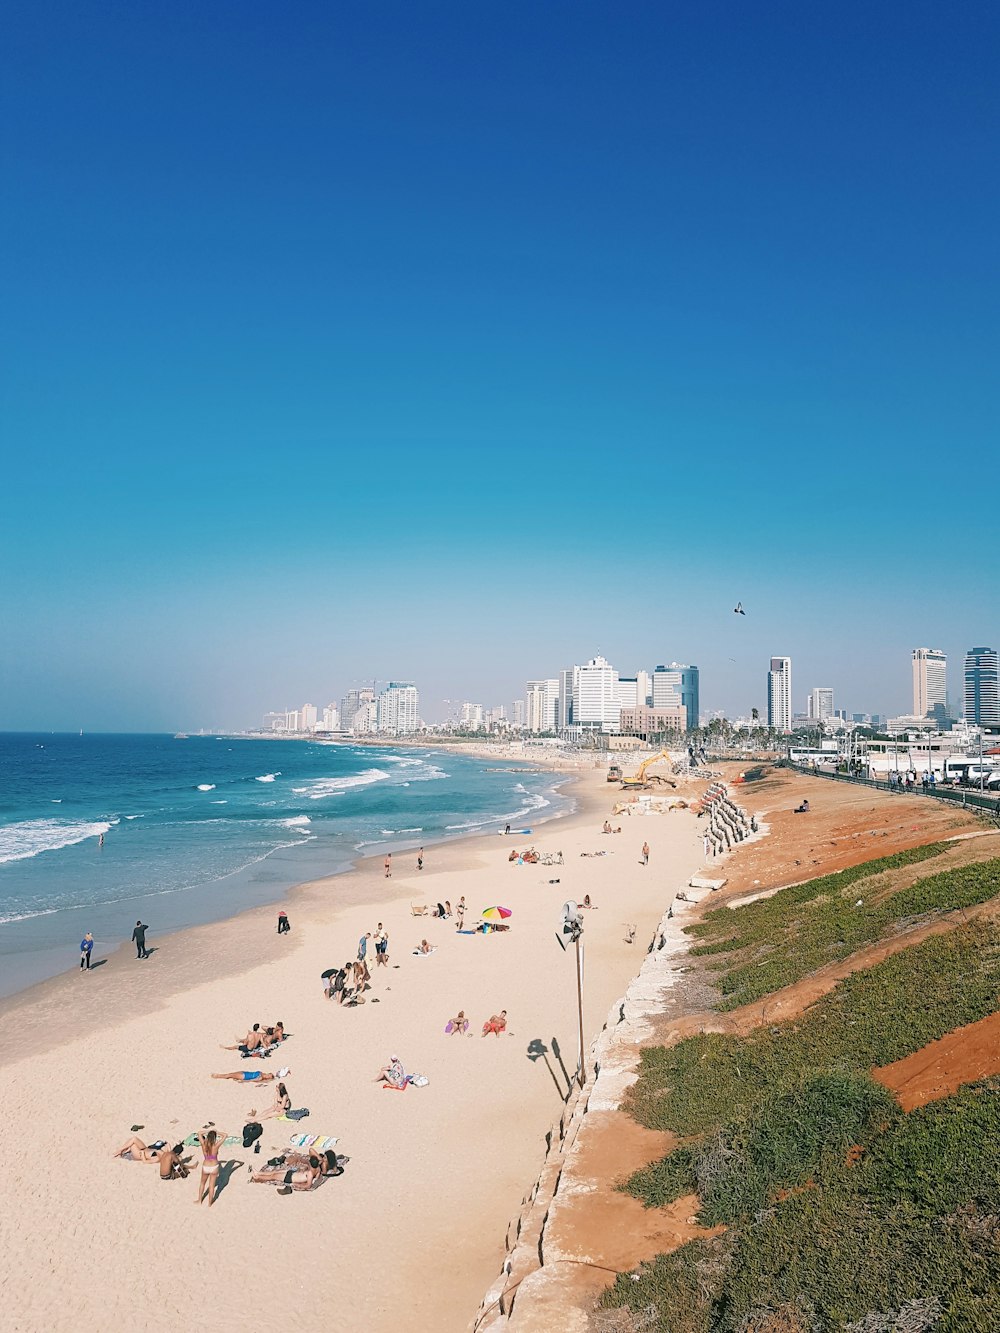 500+ Tel Aviv Pictures | Download Free Images on Unsplash